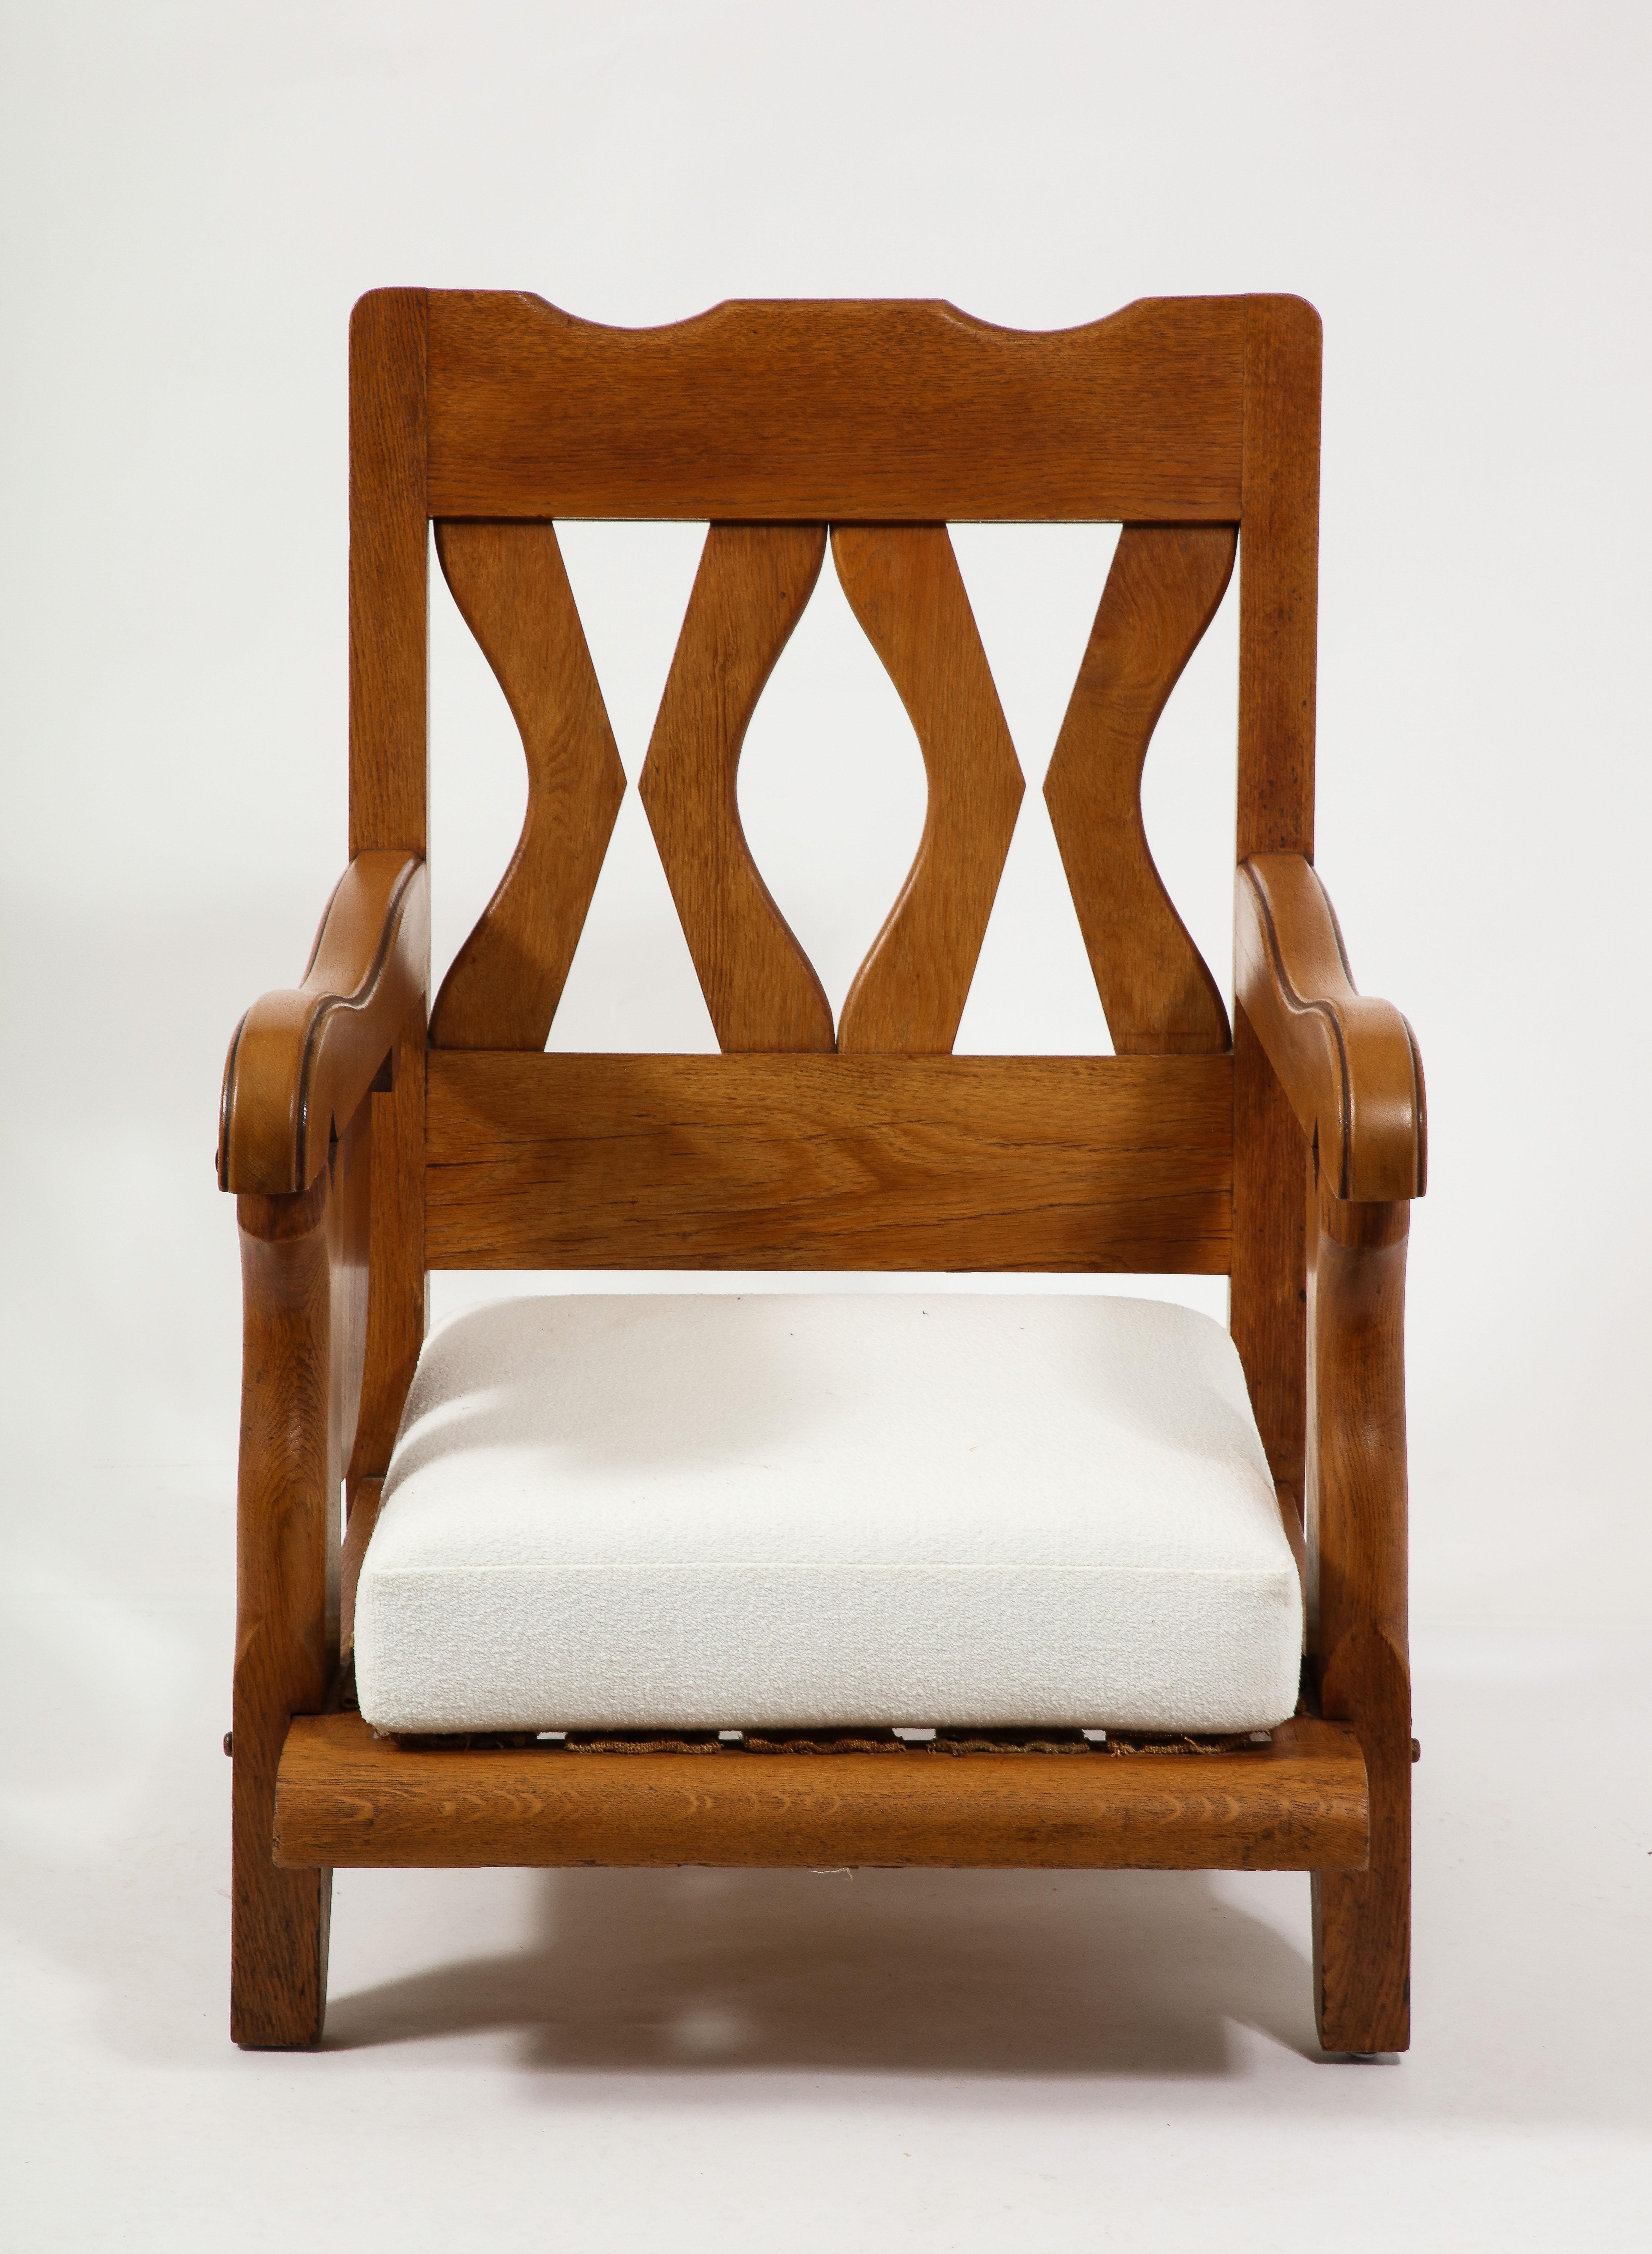 Großer Eichenholz-Gentleman-Stuhl mit klappbarem Getränketablett, eleganter Konstruktion und Tischlerei.
Der Stuhl wurde inzwischen neu gepolstert, neue Fotos folgen in Kürze.
